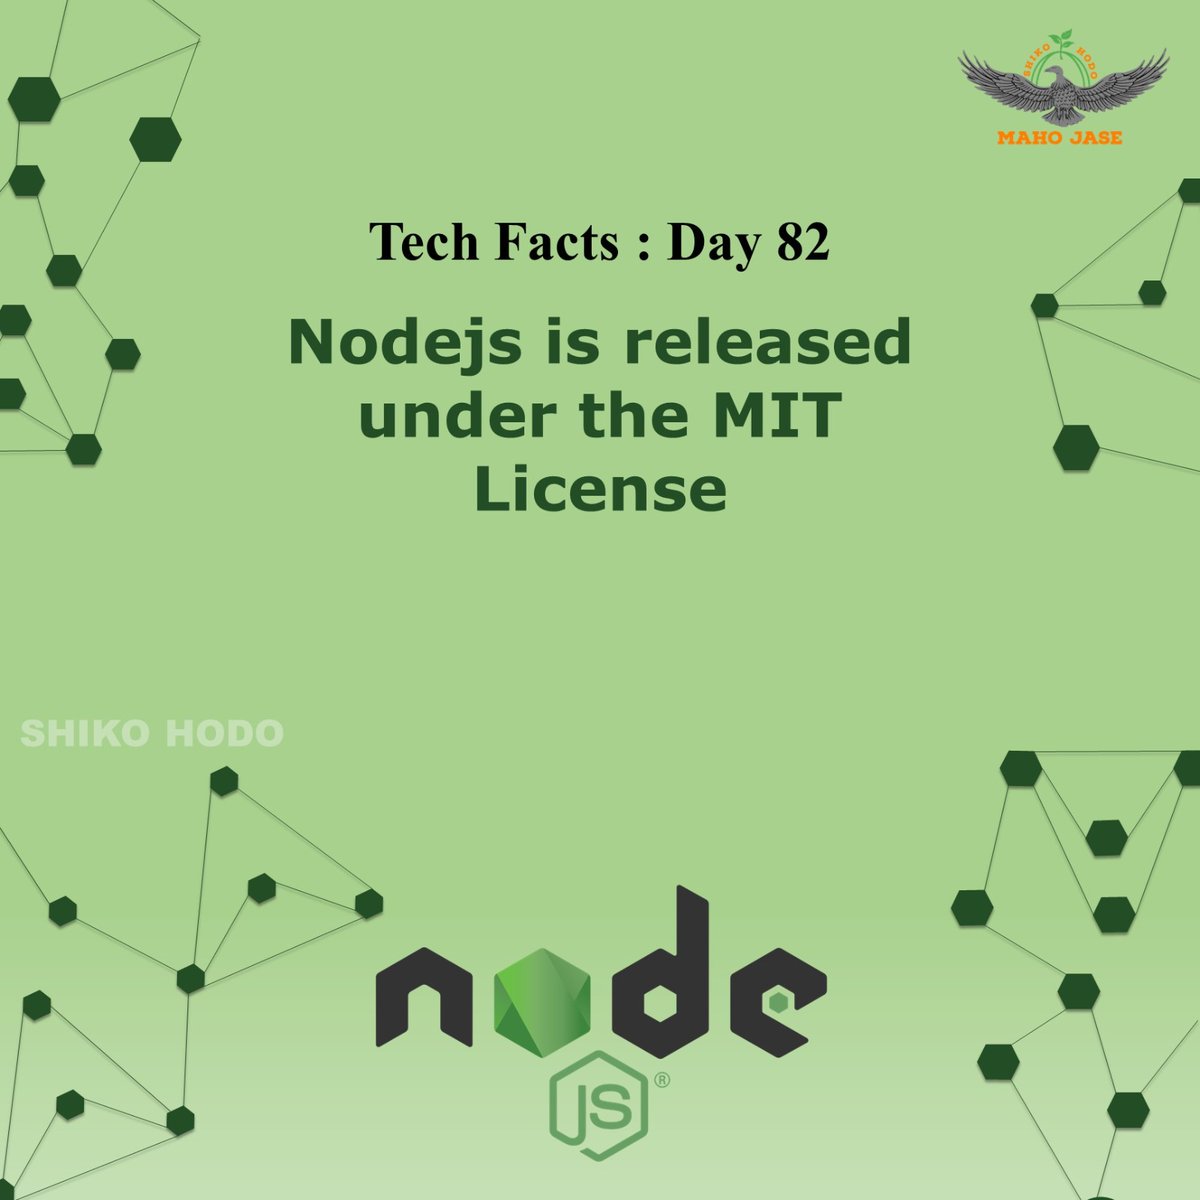 Tech Facts : Day 82

#nodejs #nodejsdevelopment #nodejstraining #nodejsfacts #nodejsdevelopers #nodejsprogramming #nodes #js #dailytechfacts #Mjit